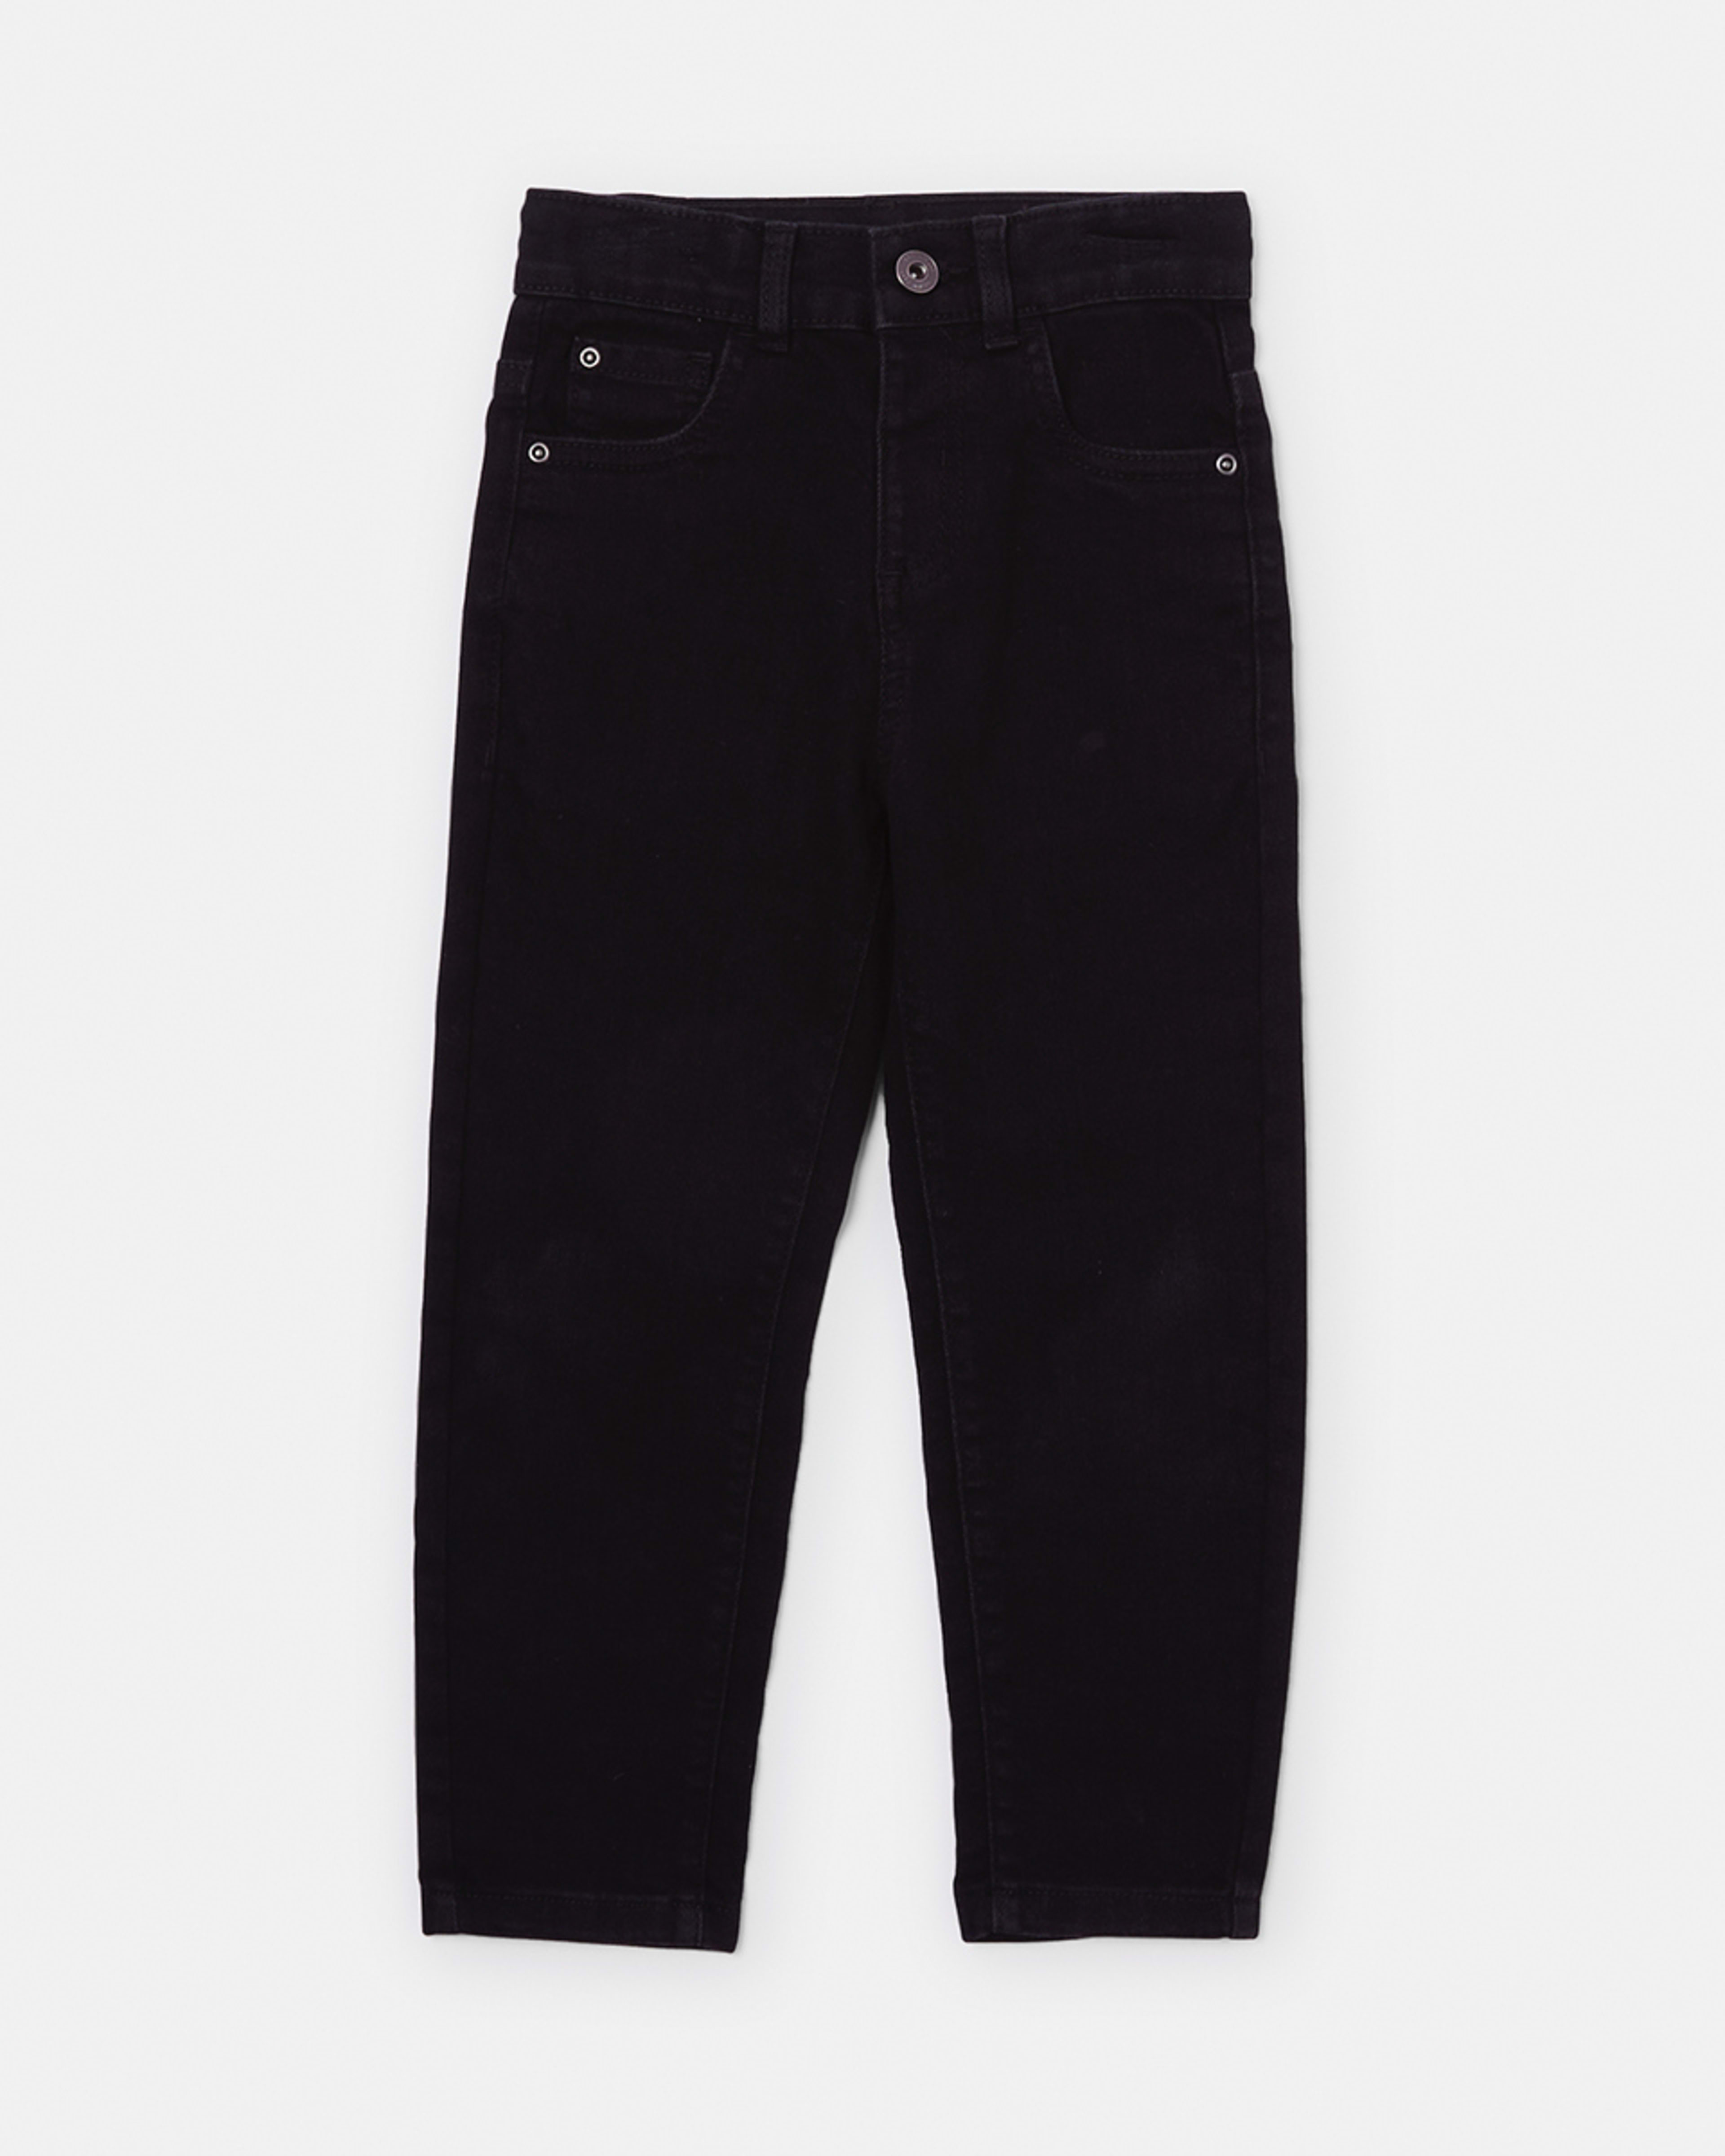 Black Jeans - Kmart